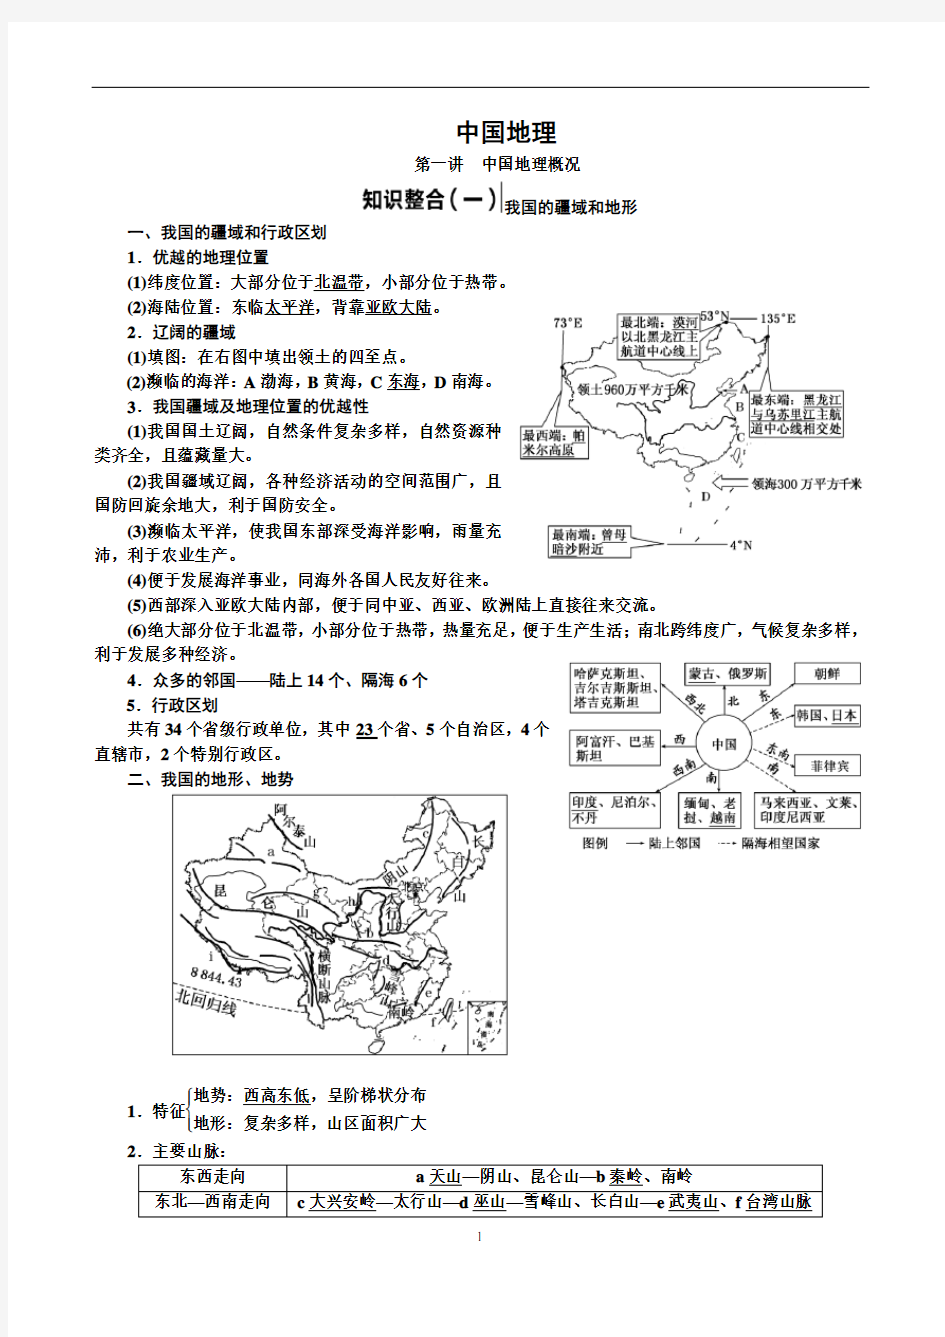 中国地理知识点汇总分享